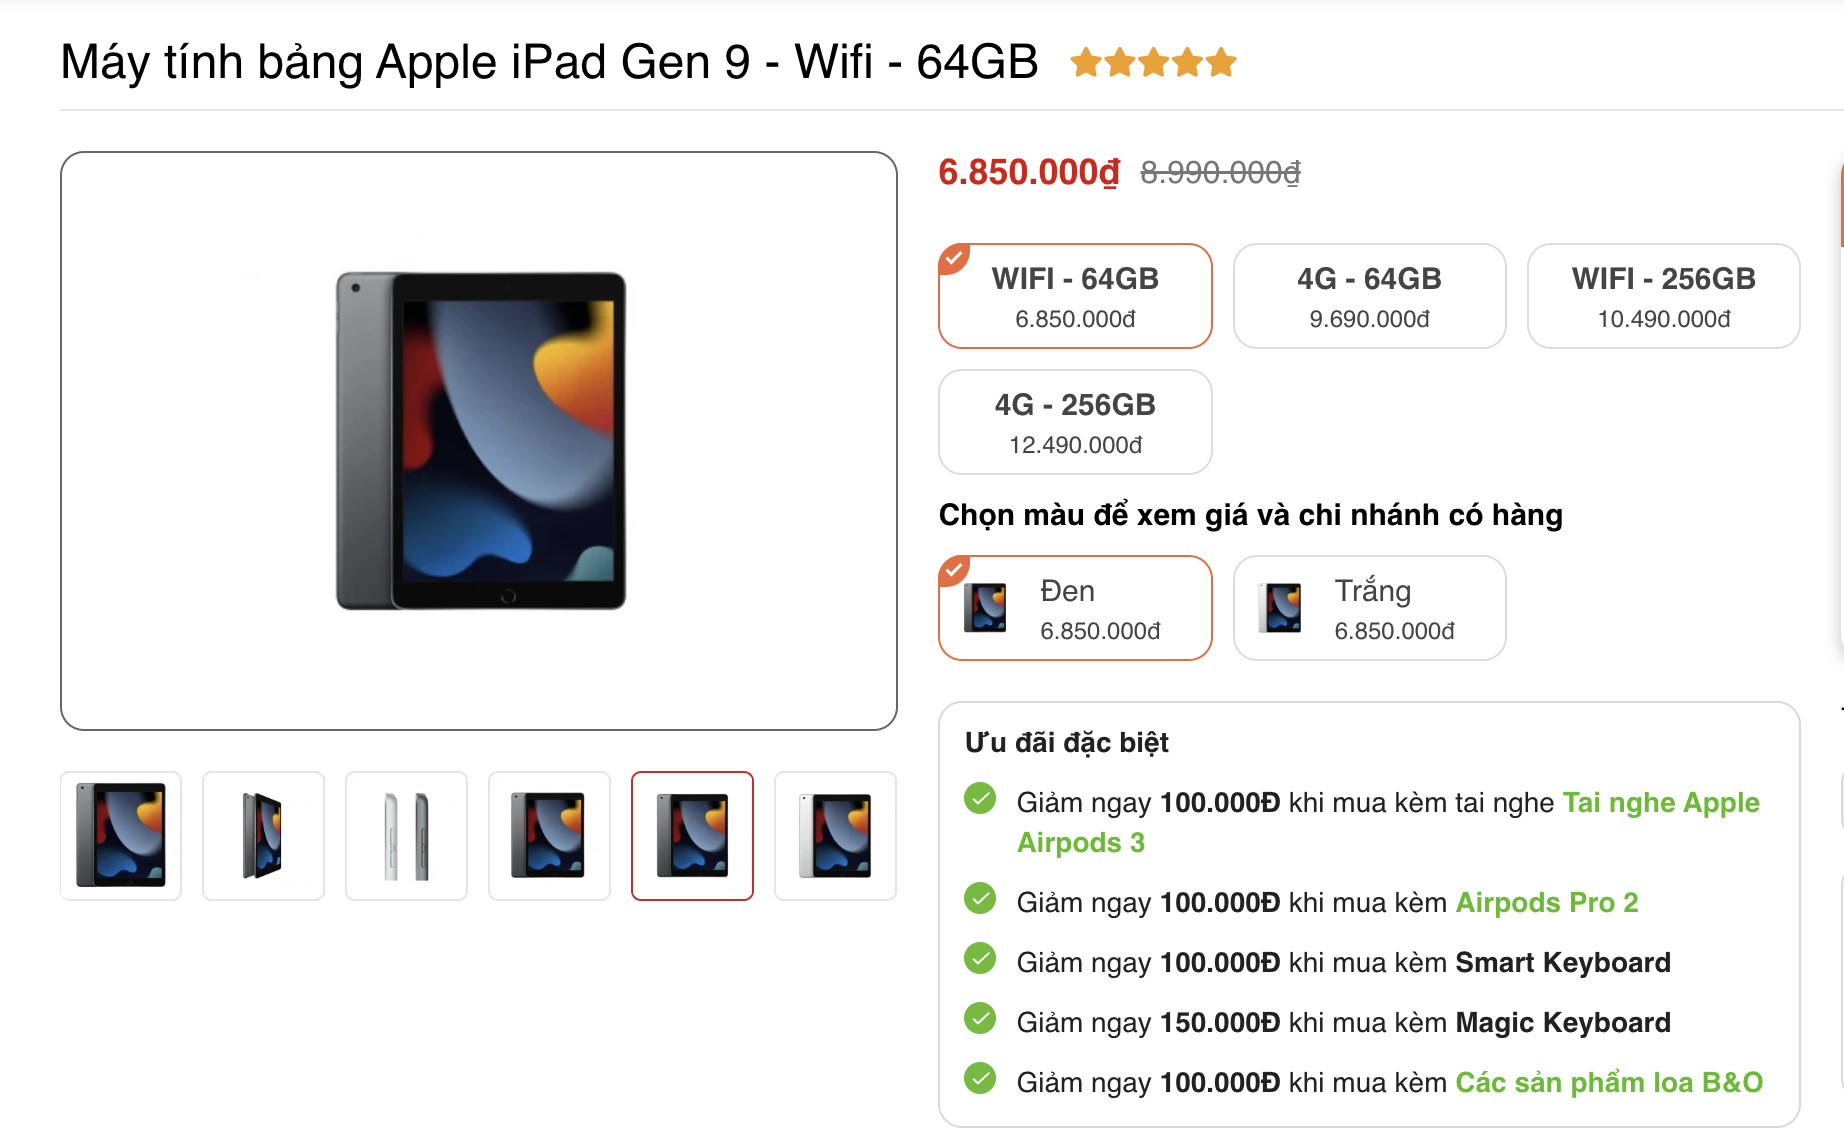 Sắp ra mắt thế hệ mới, giá bán các dòng iPad tại Việt Nam ra sao?